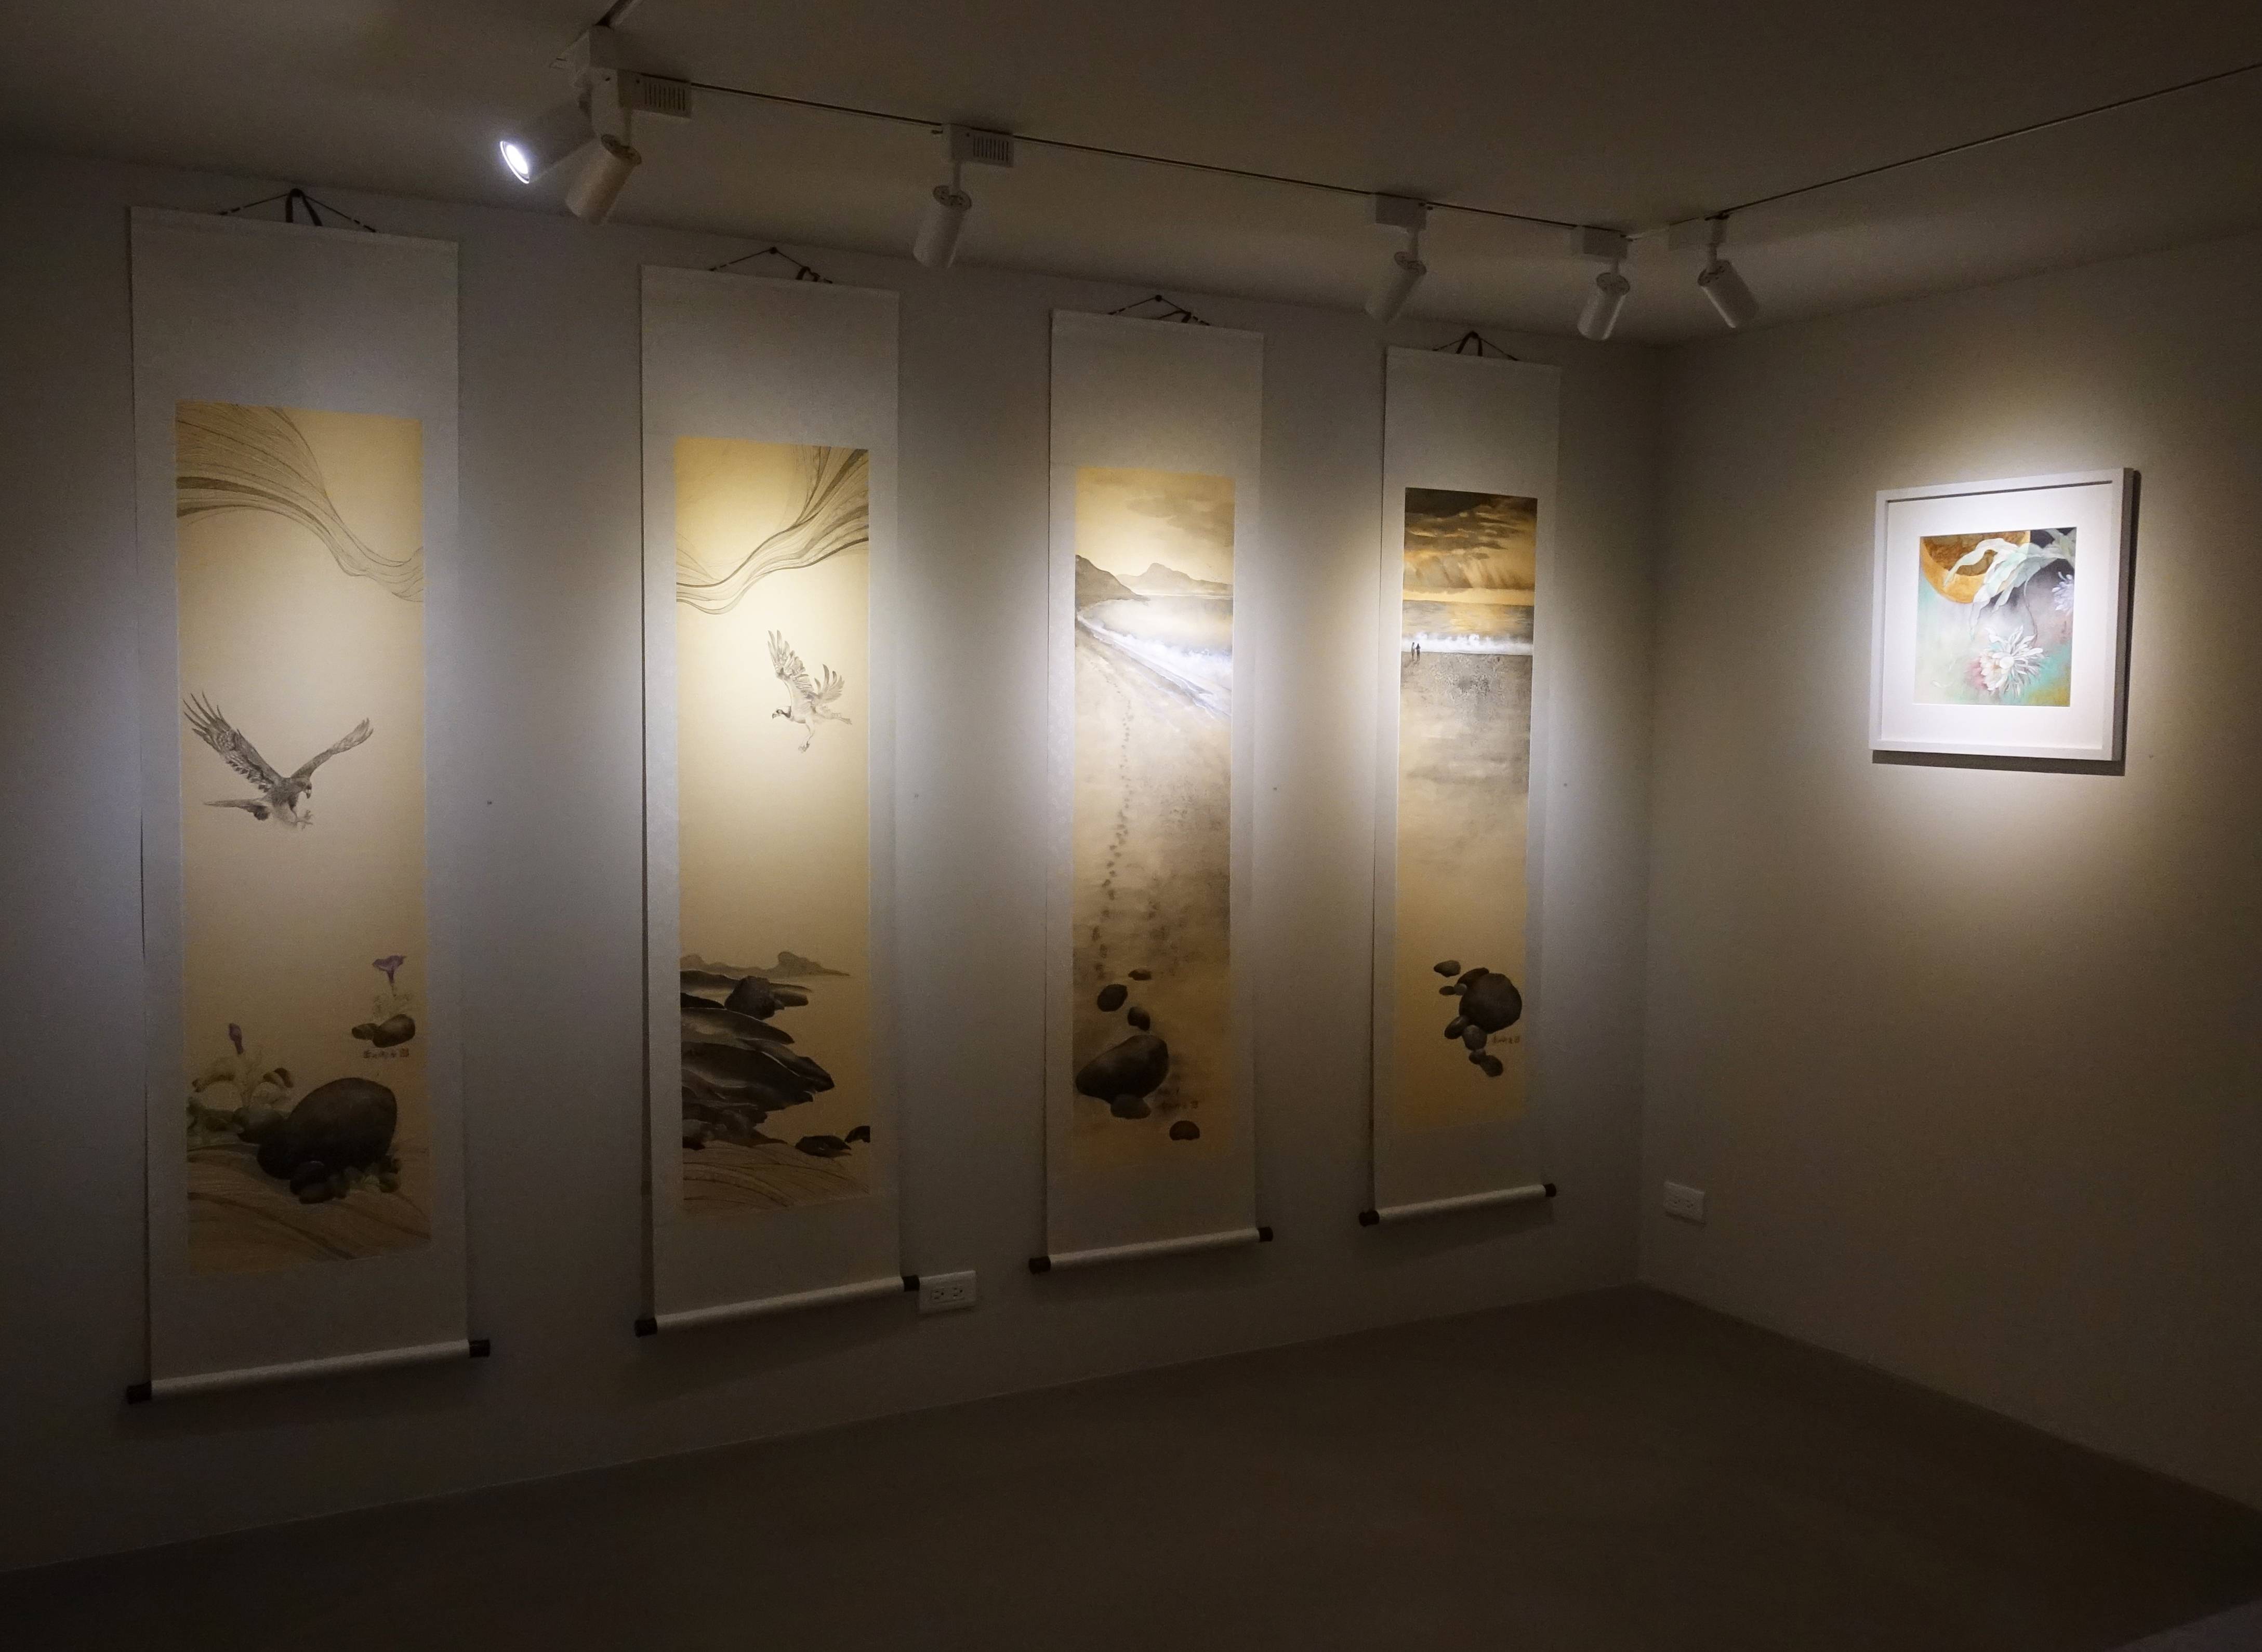 有璽藝術空間展出藝術家黃淑卿「生之嶼島」作品展。